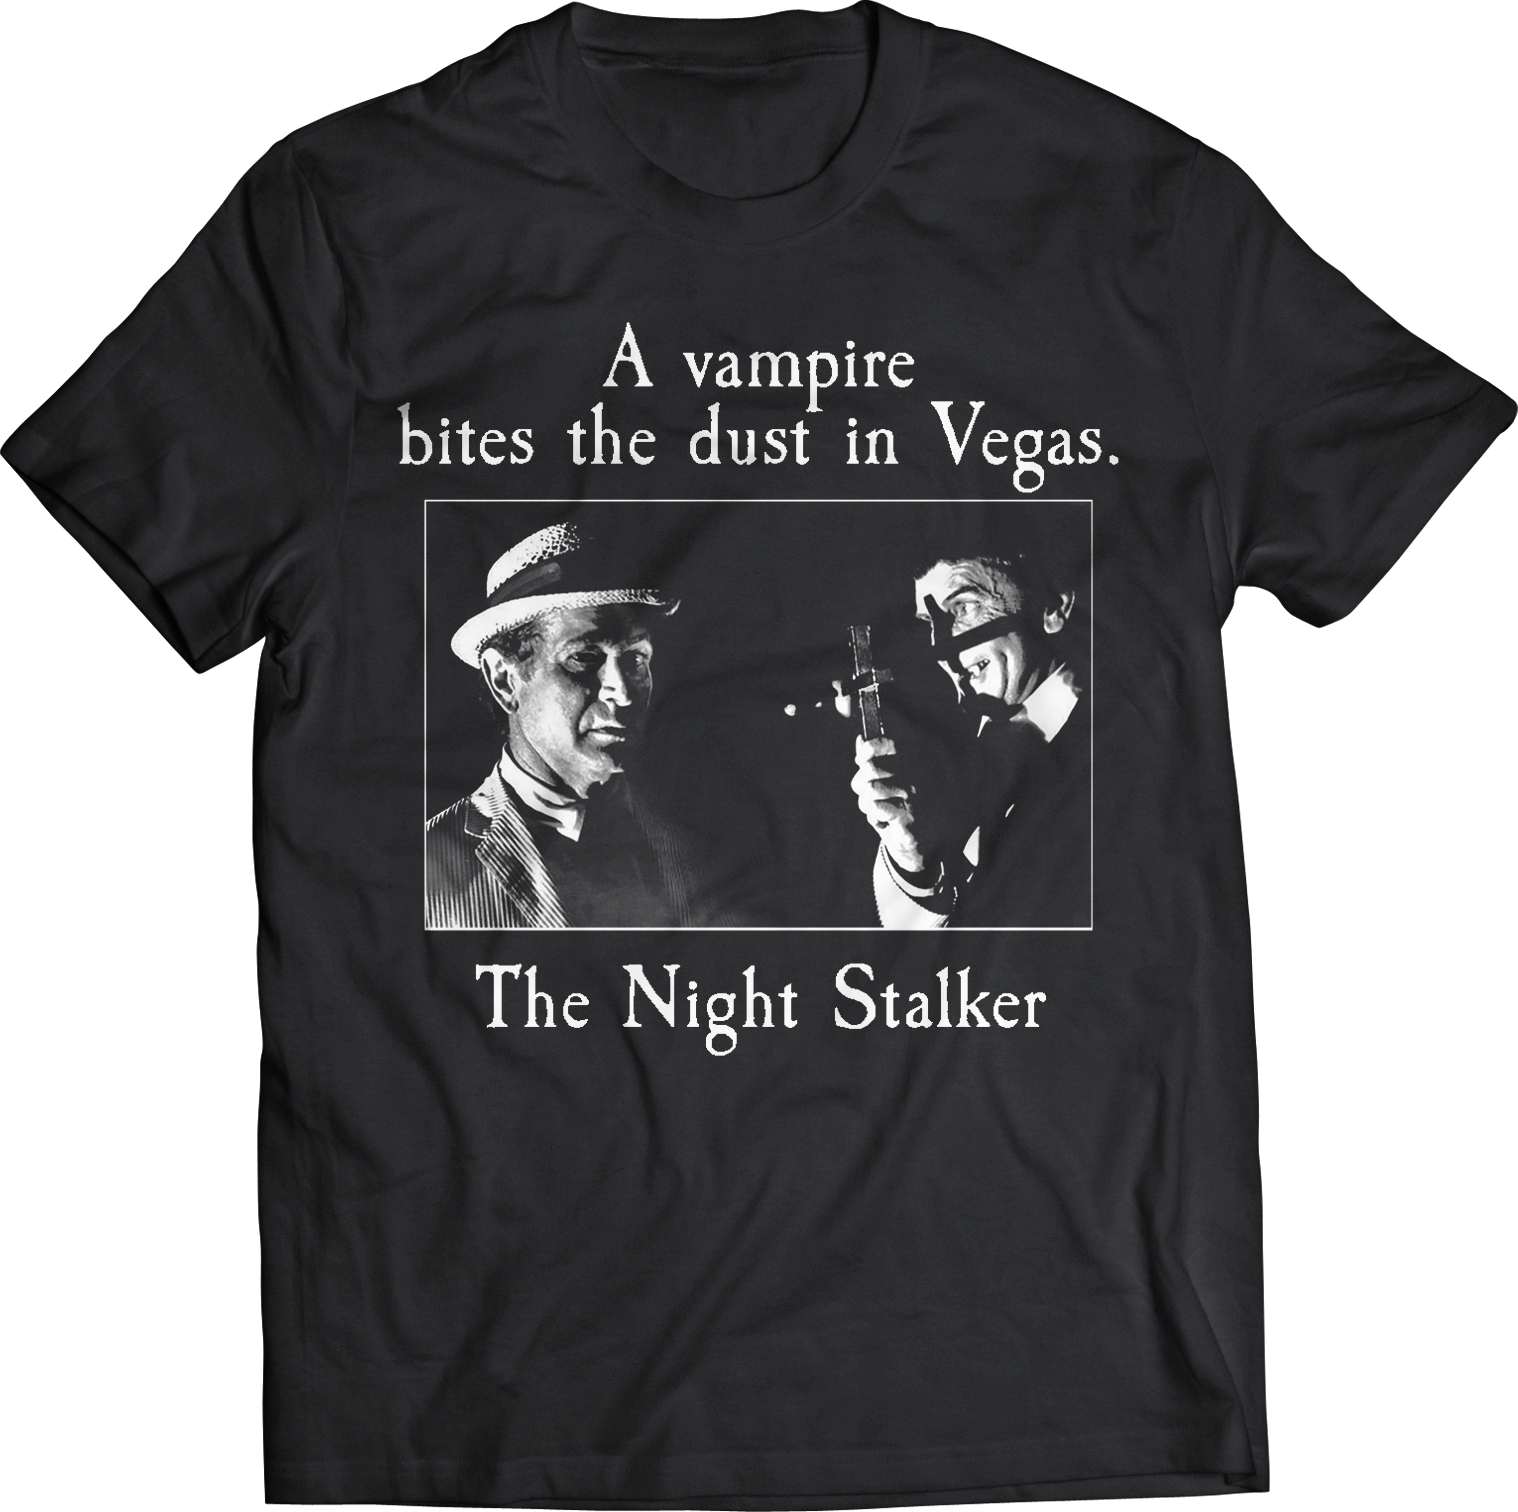 KOLCHAK: THE NIGHT STALKER:  "VAMPIRE IN VEGAS" T-SHIRT